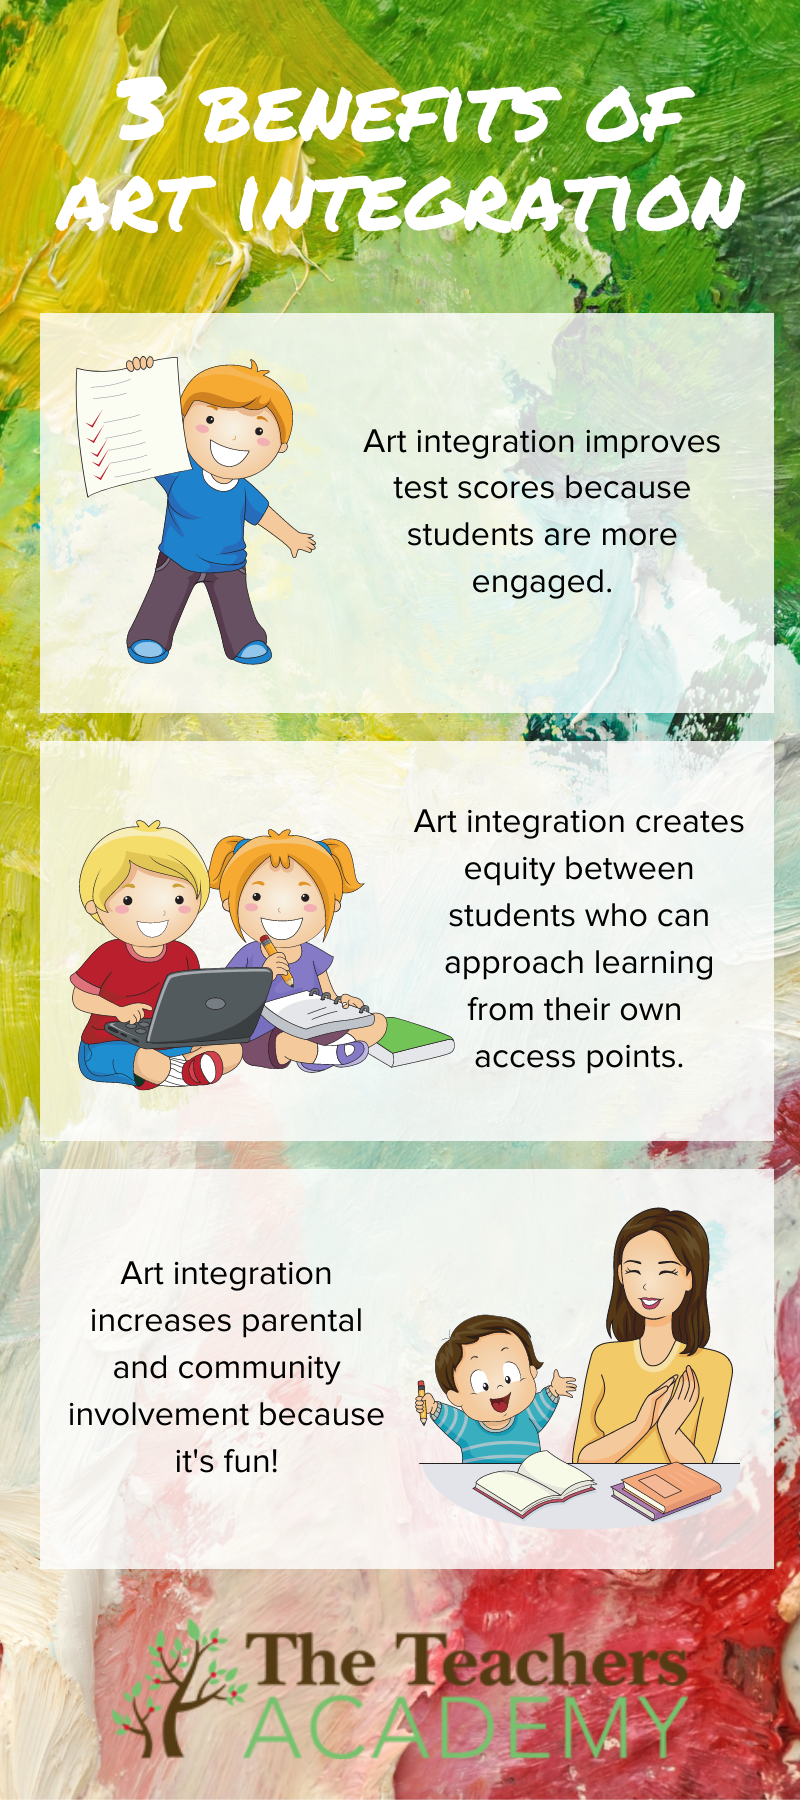 The Teacher's Academy — 3 Benefits of Art Integration